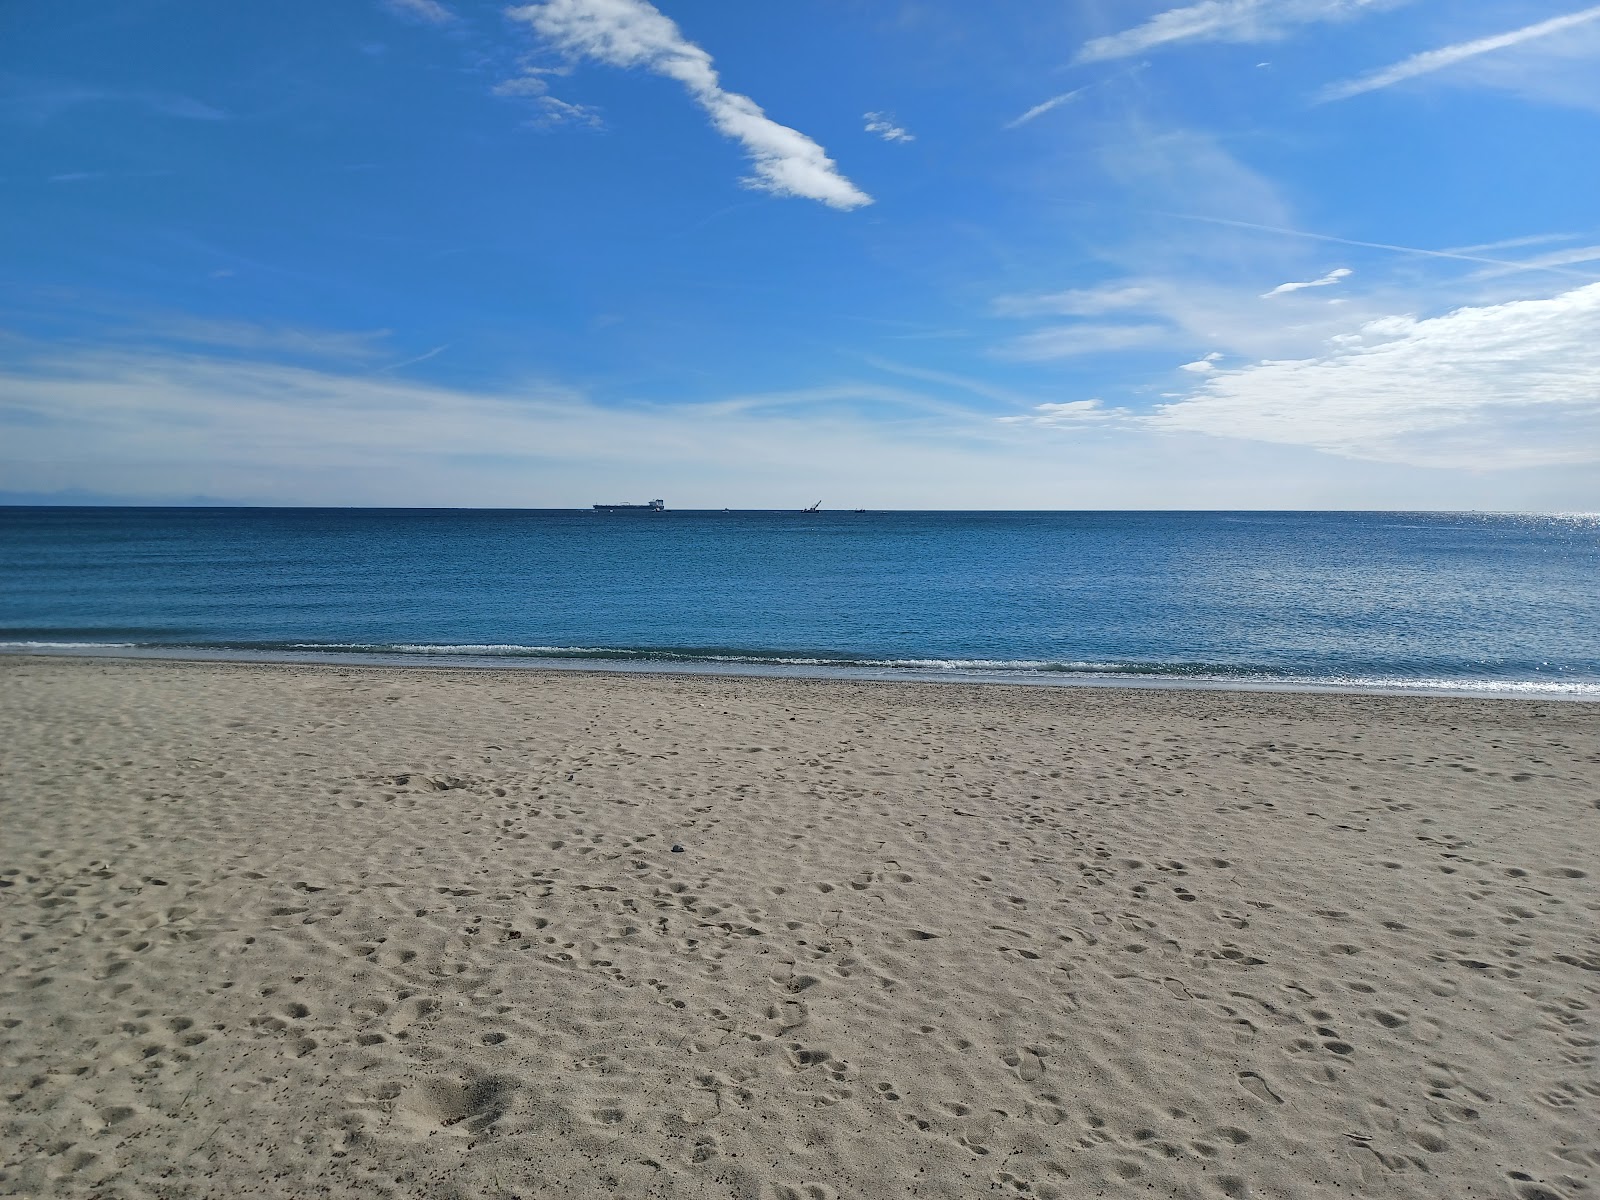 Foto af Spiaggia di Zinola - populært sted blandt afslapningskendere